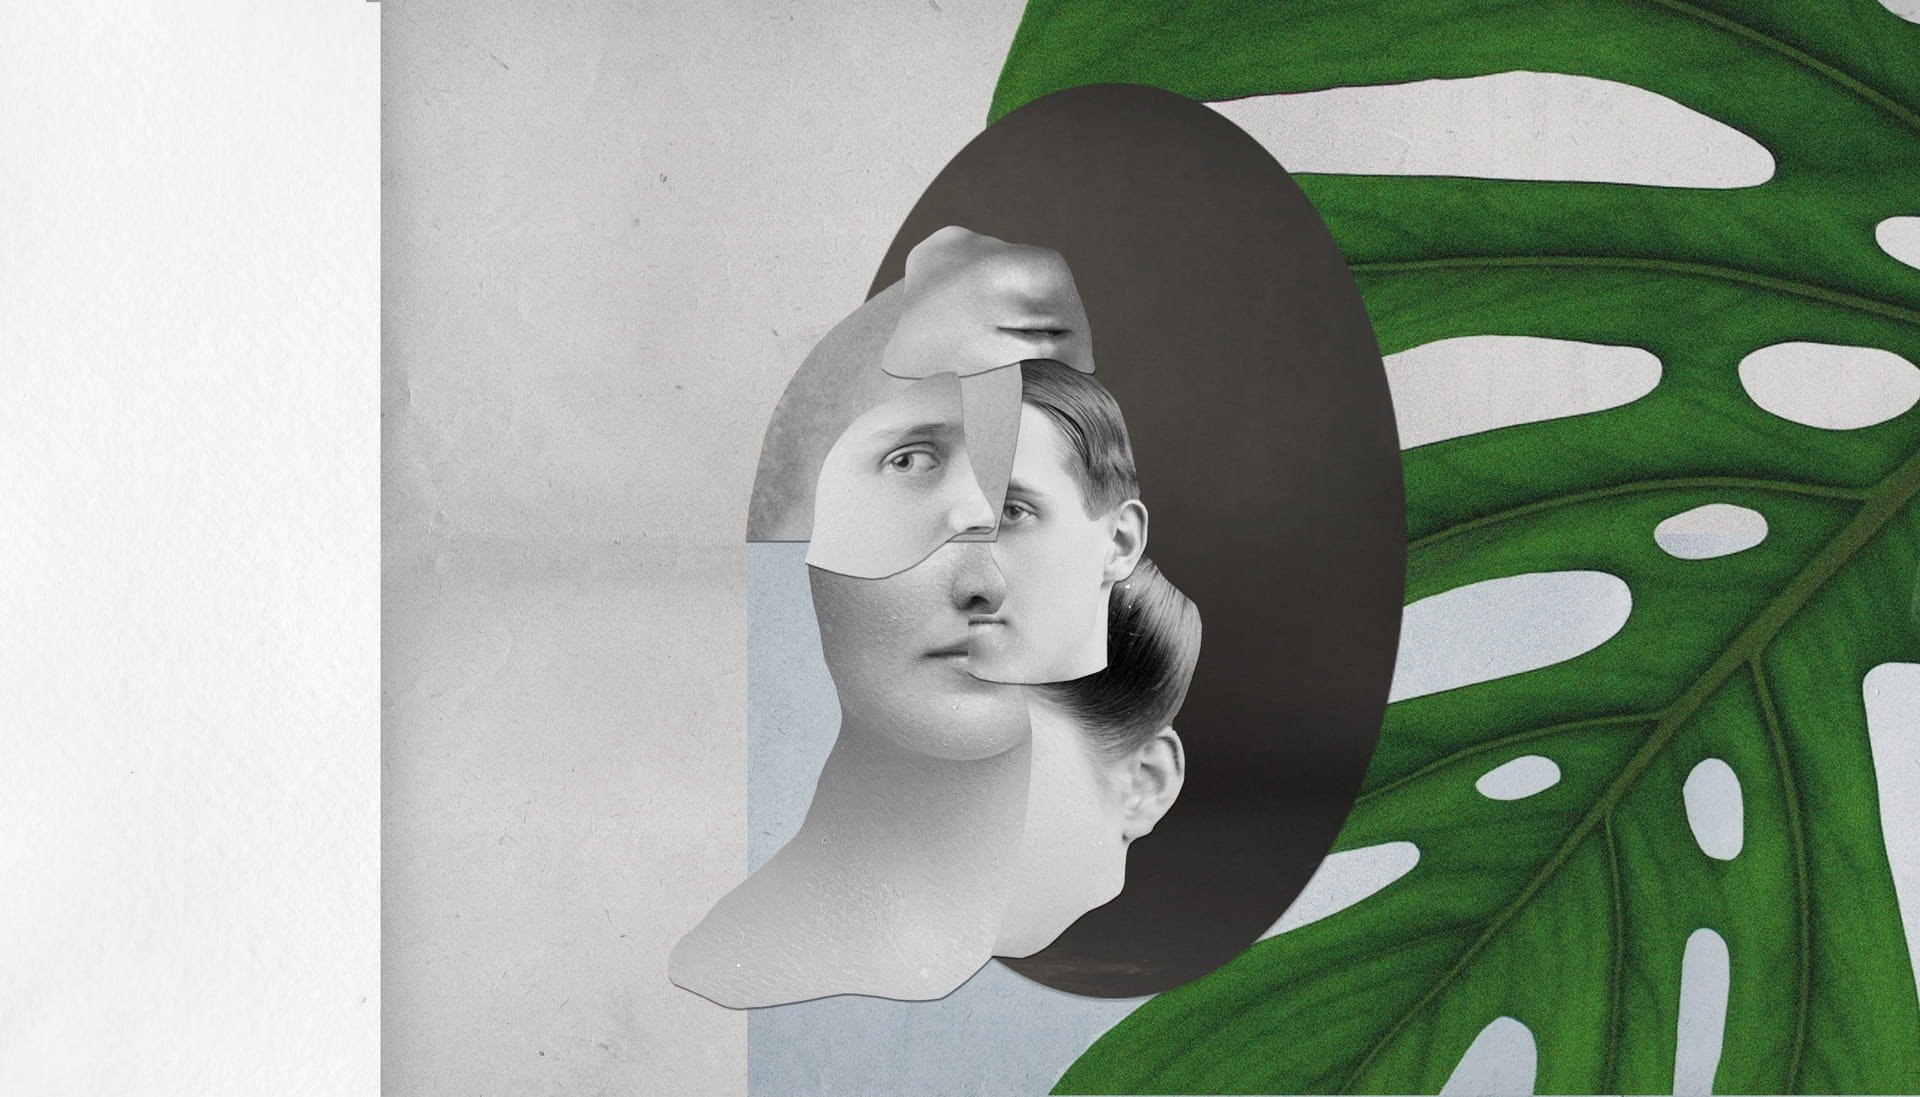 Collage van stukjes van verschillende gezichten met daar achter grijs- en blauwvlakken en een groen blad.